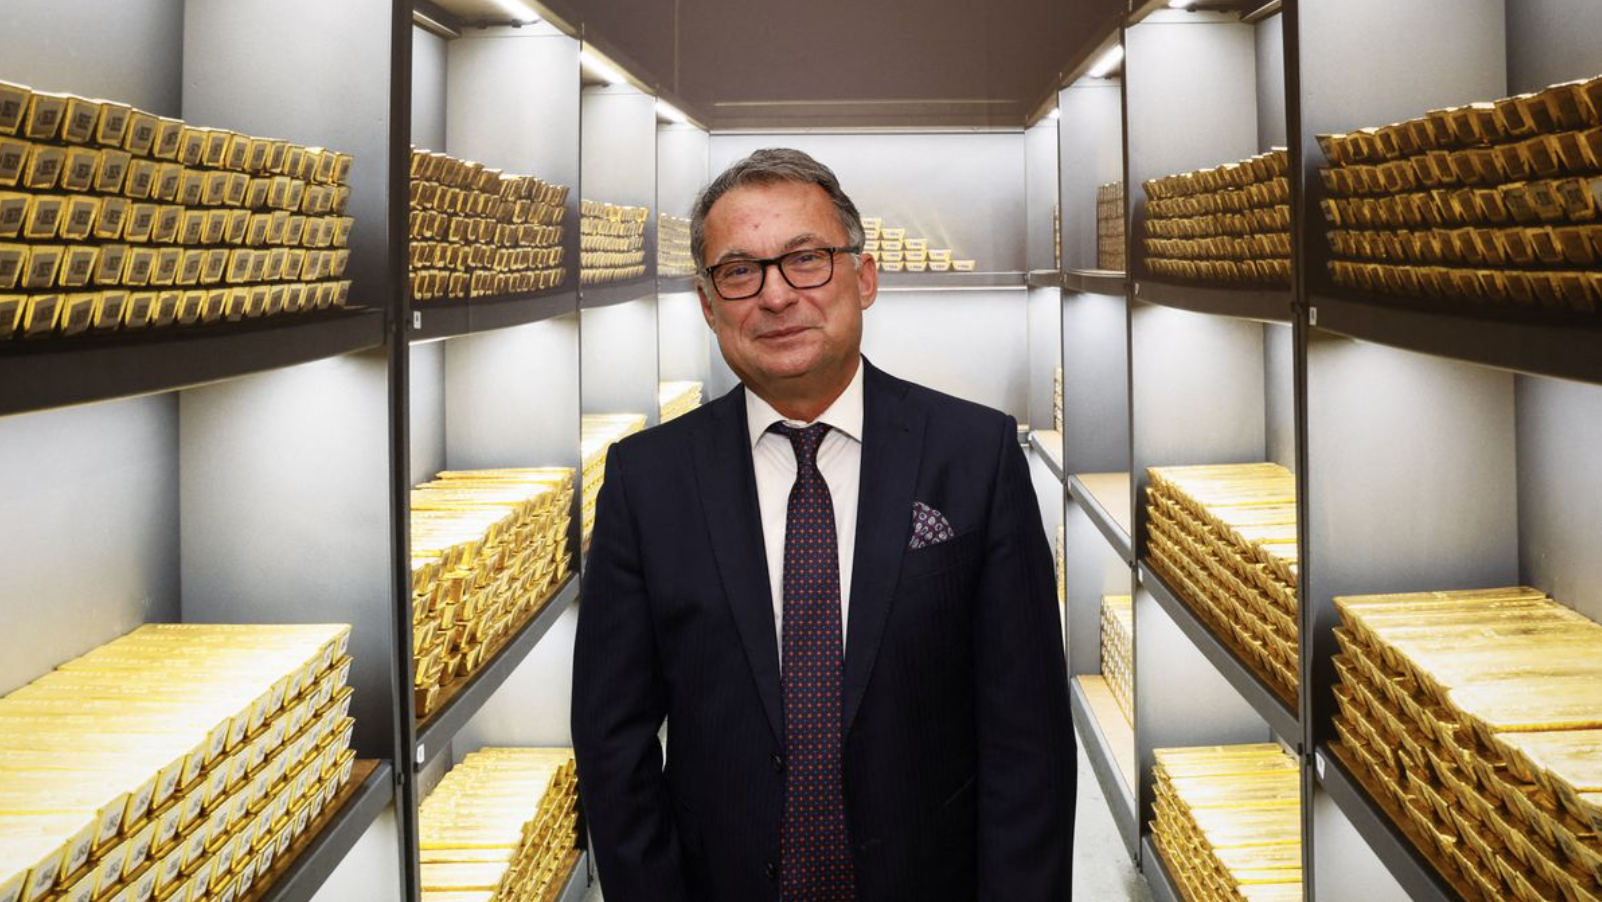 Các NHTW đang gom vàng với tốc độ kỷ lục trong nhiều thập kỷ, vàng sắp trở lại?